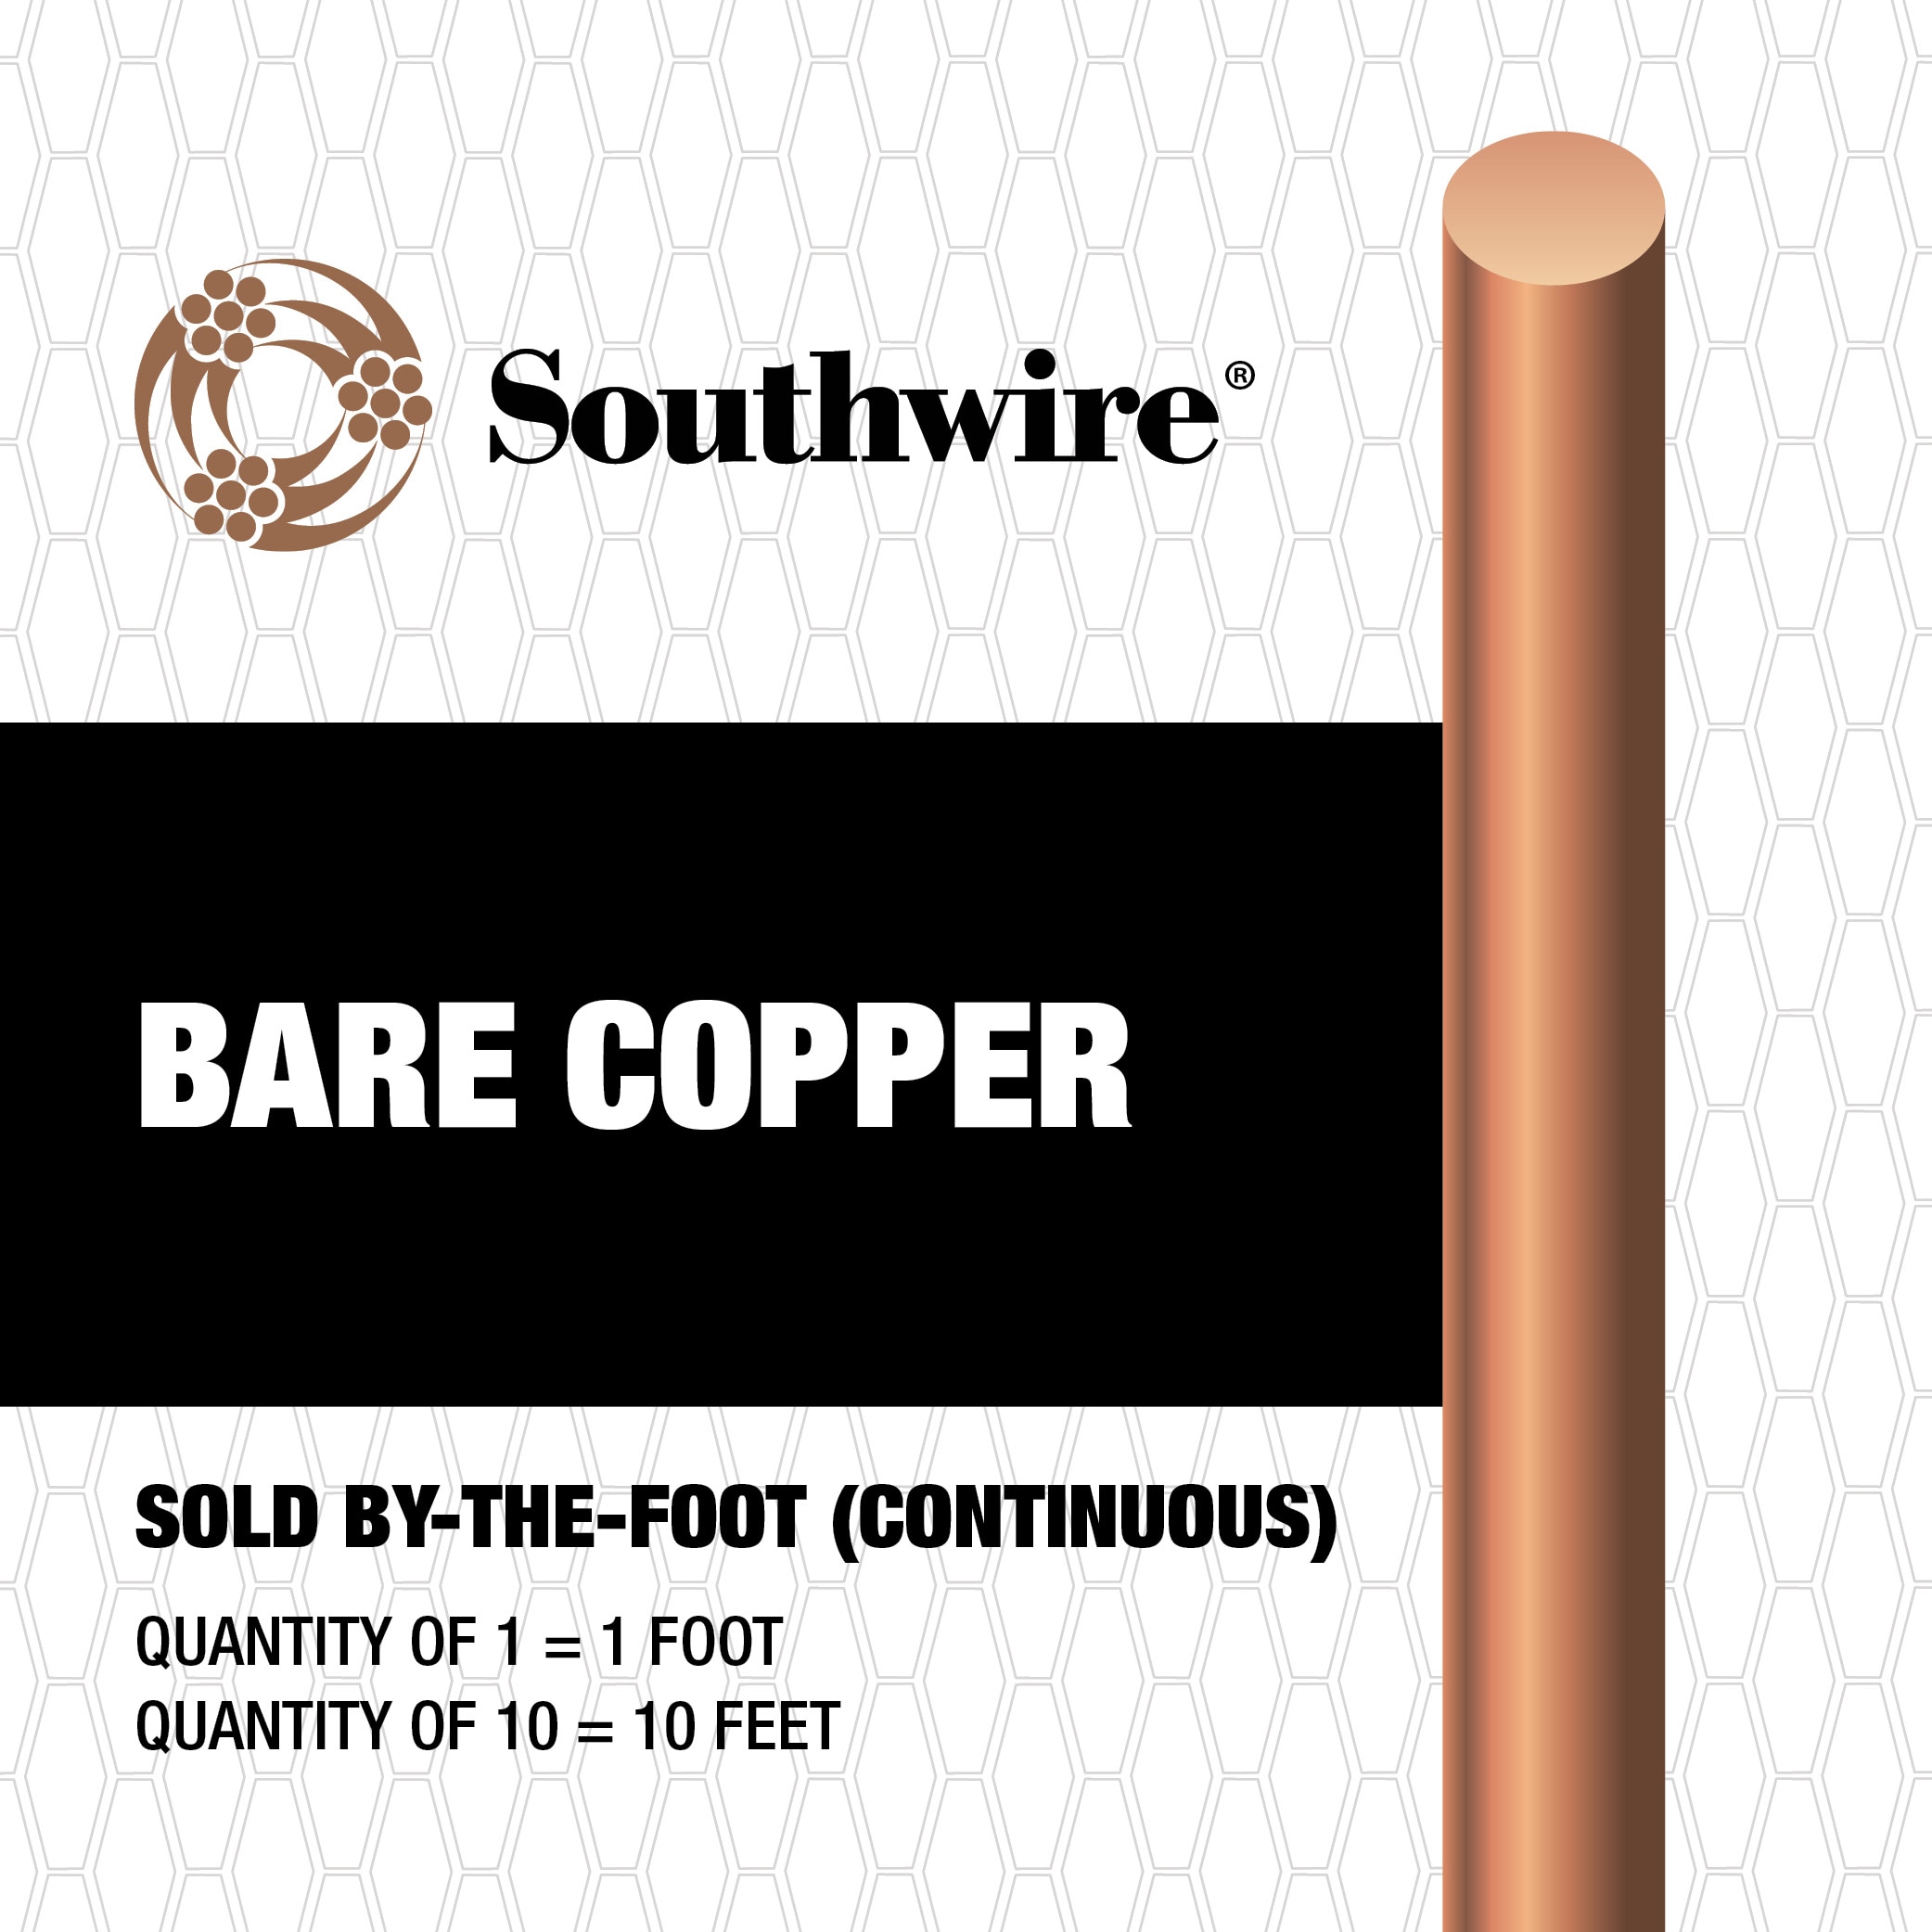 10 AWG Bare Copper Wire 25 ft Coil Single Solid Copper Wire 99.9% Pure